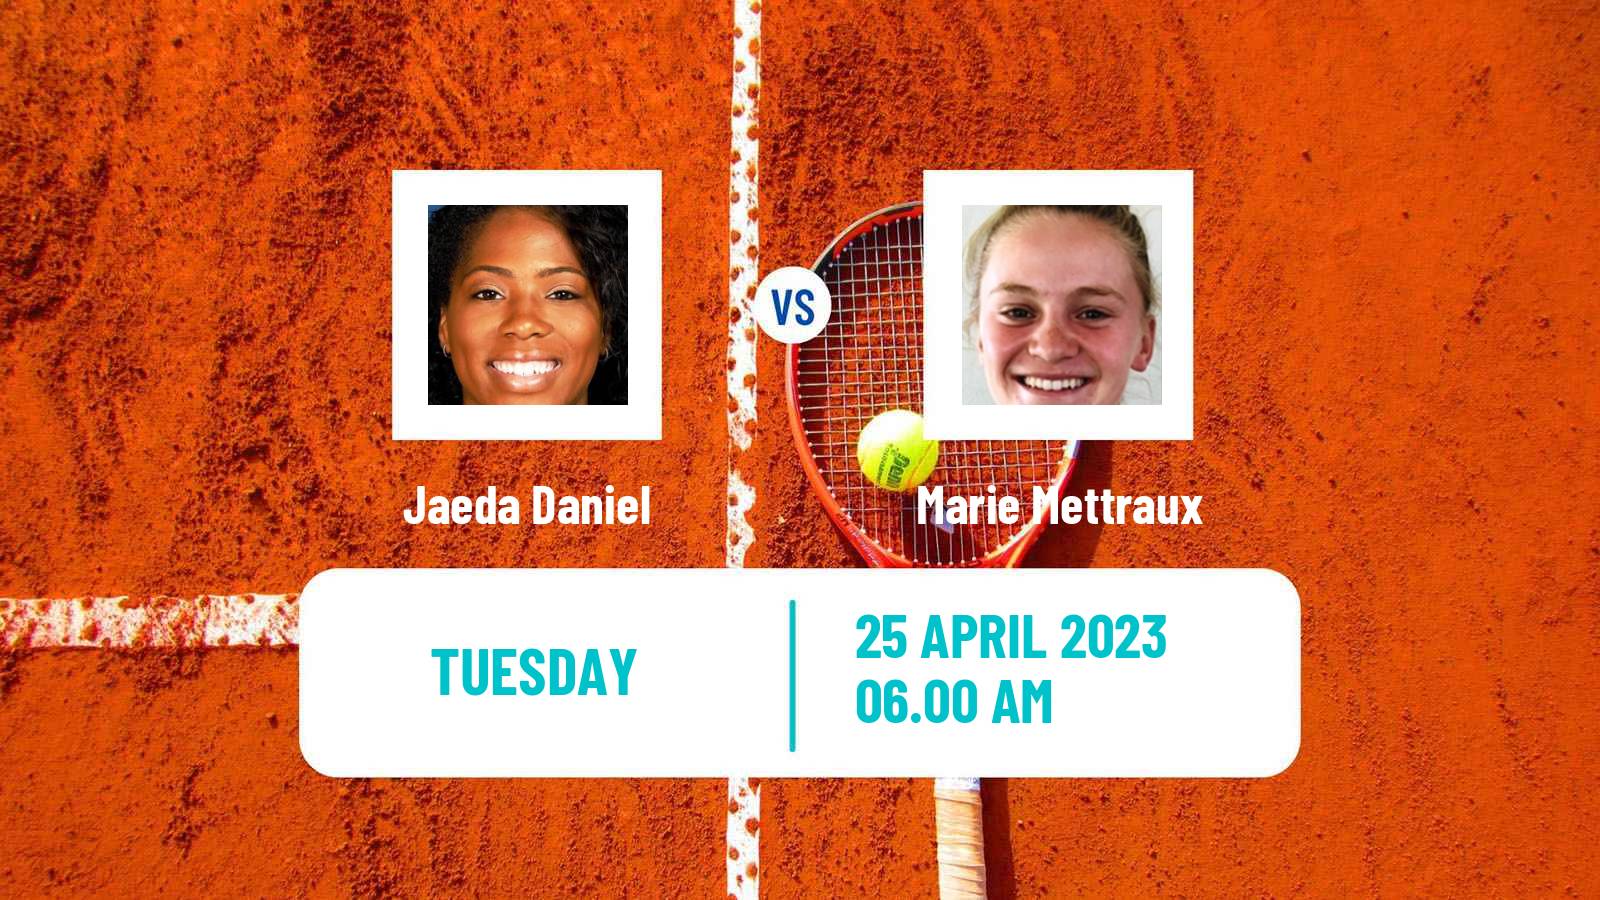 Tennis ITF Tournaments Jaeda Daniel - Marie Mettraux